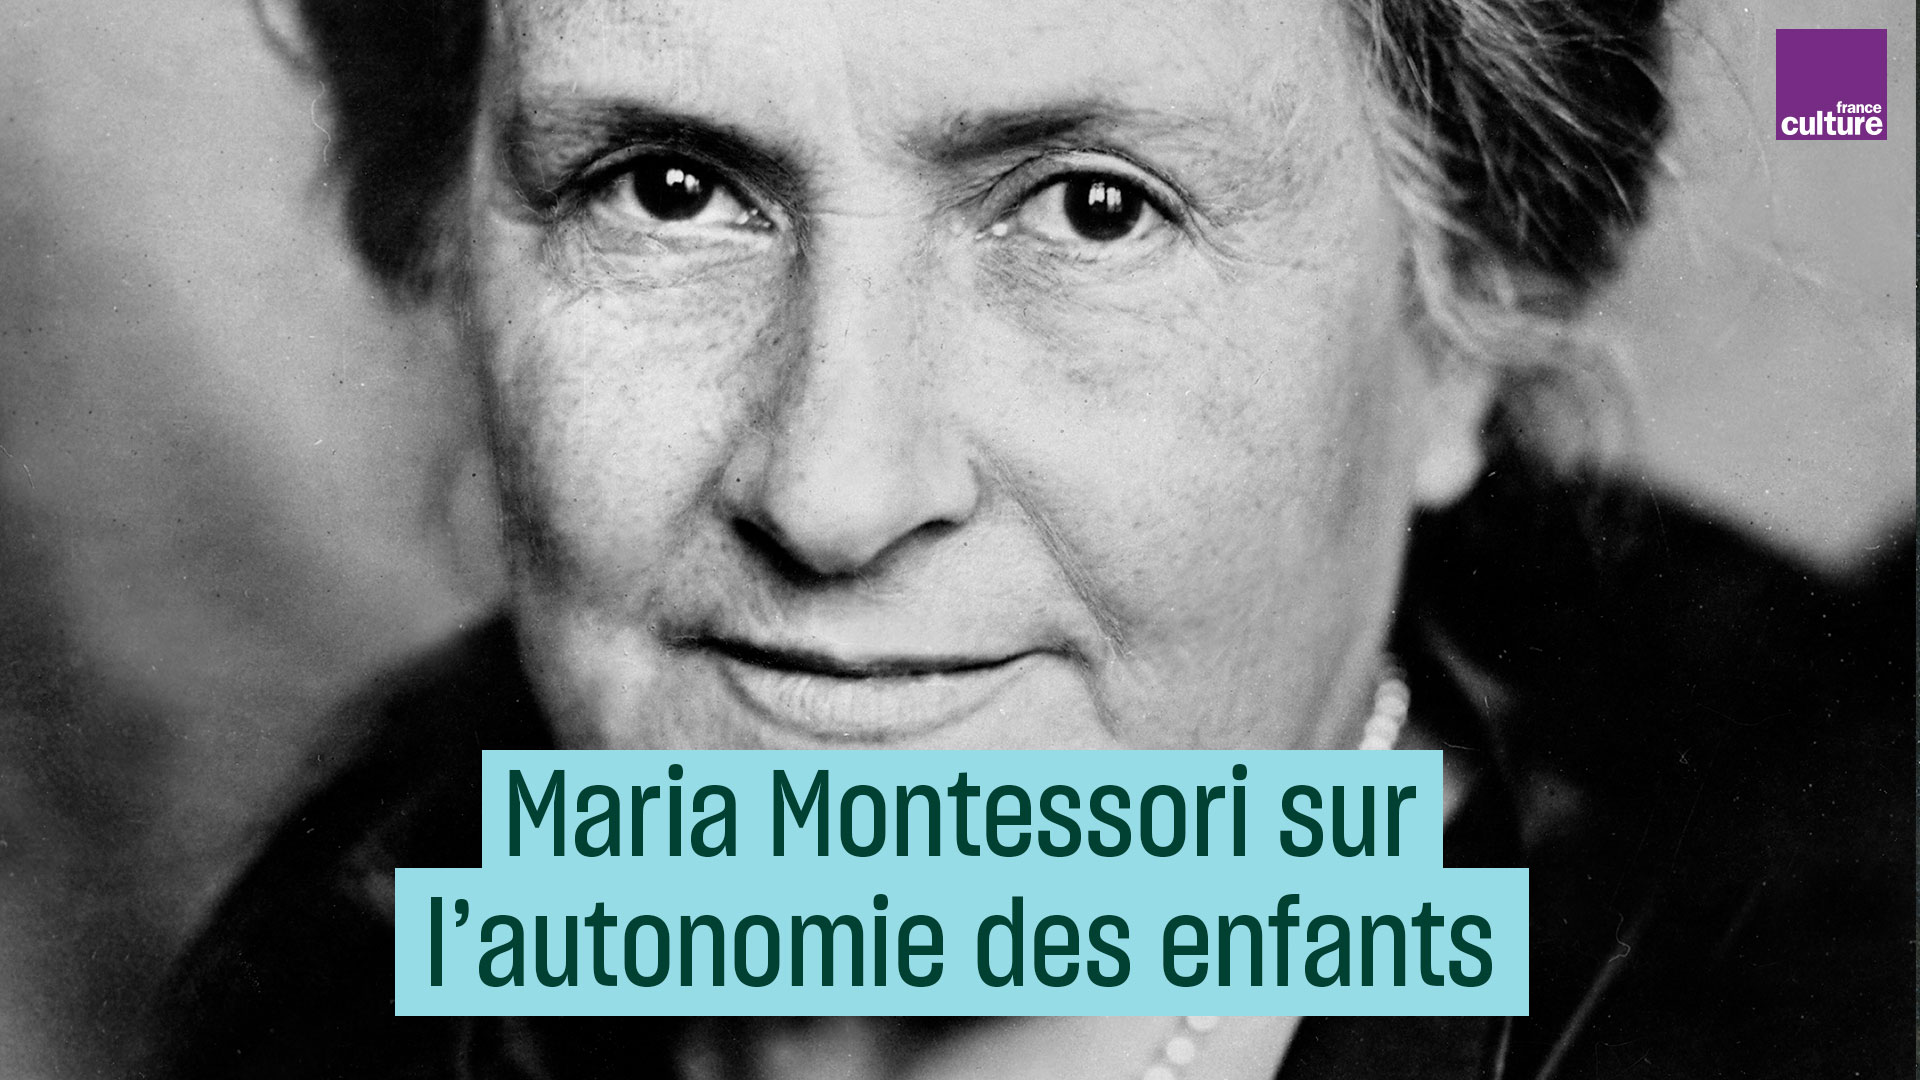 France Culture on Twitter: "6 mai 1952: mort de Maria Montessori. Au début du XXe siècle, elle propose une approche éducative novatrice fondée sur l'observation des enfants. Elle déclare ainsi en 1910: "